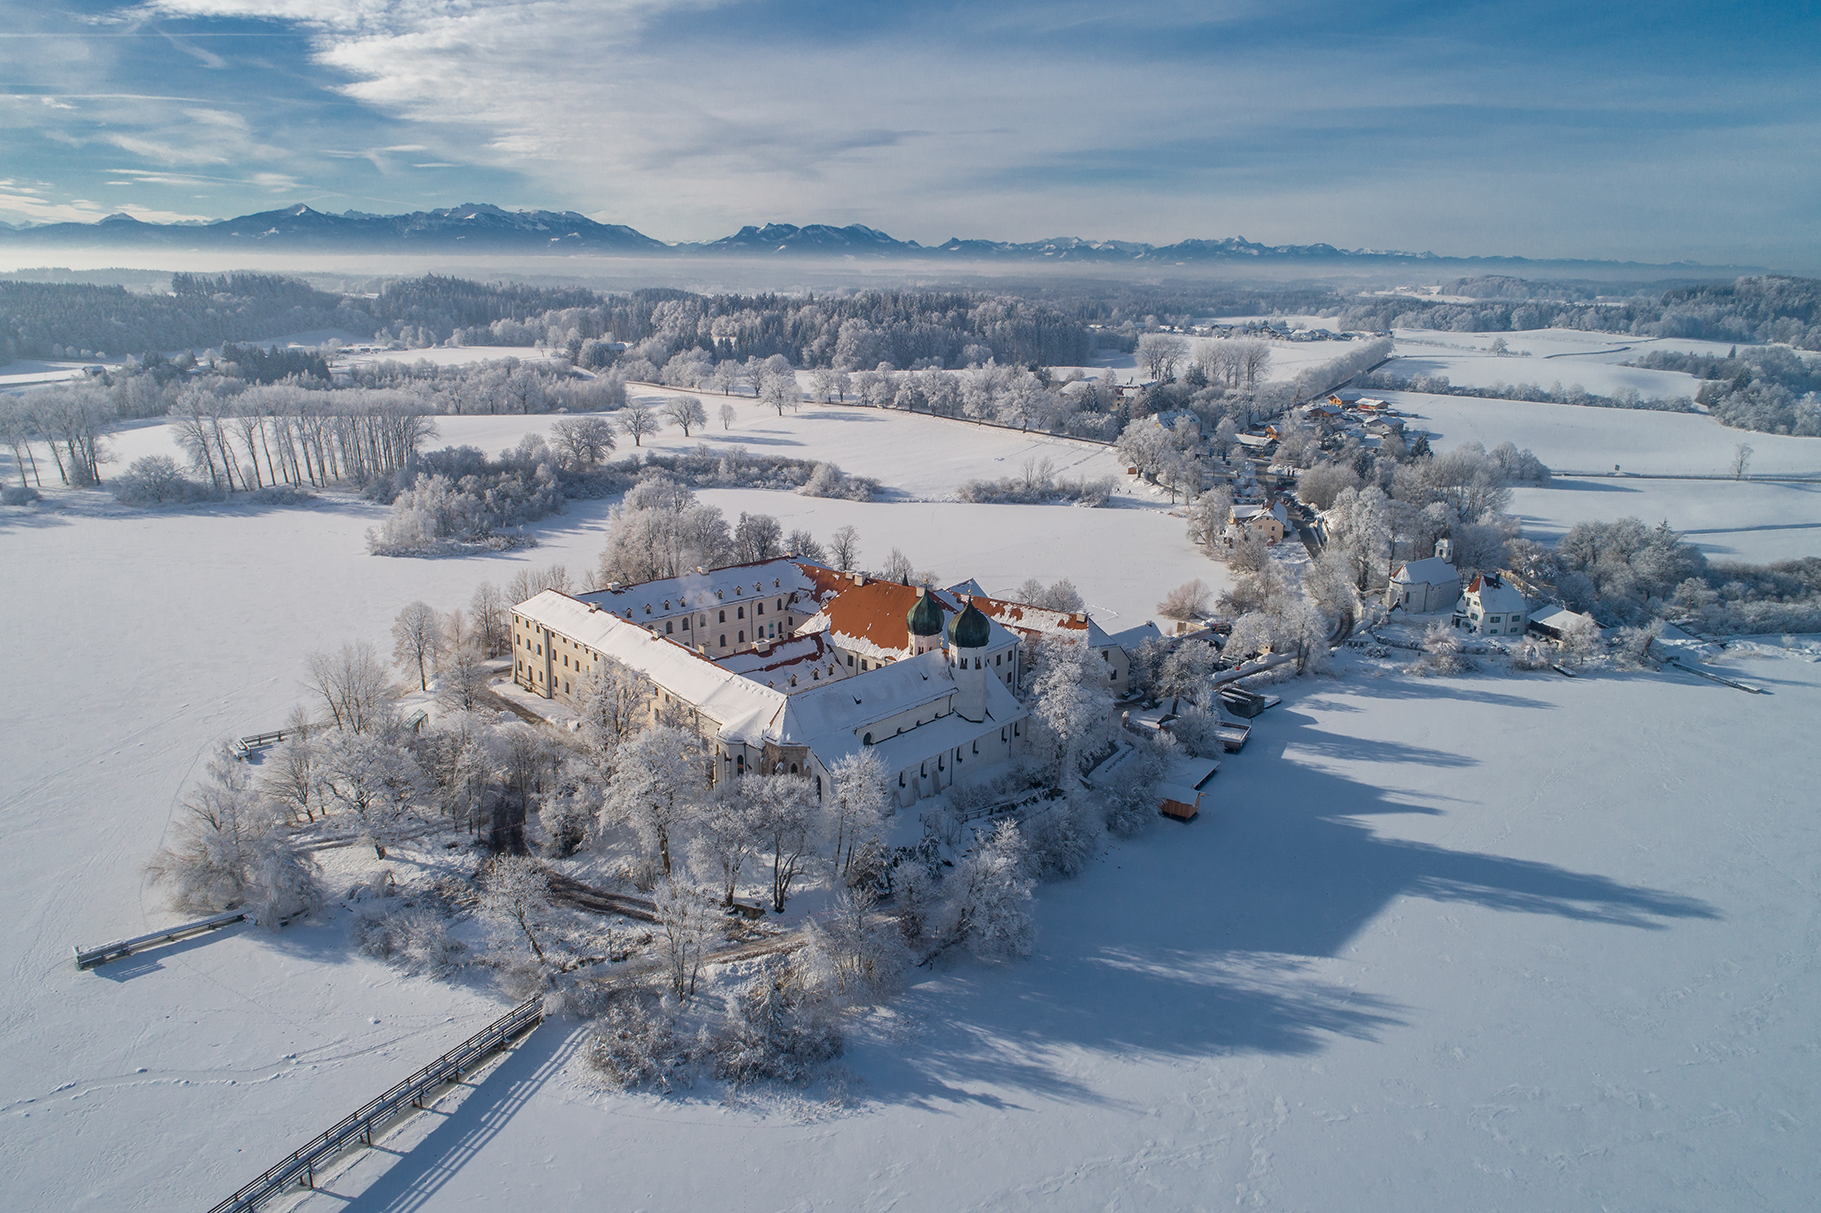 Luftaufnahme vom schneebedeckten Kloster Seeon inmitten des zugefrorenen Sees